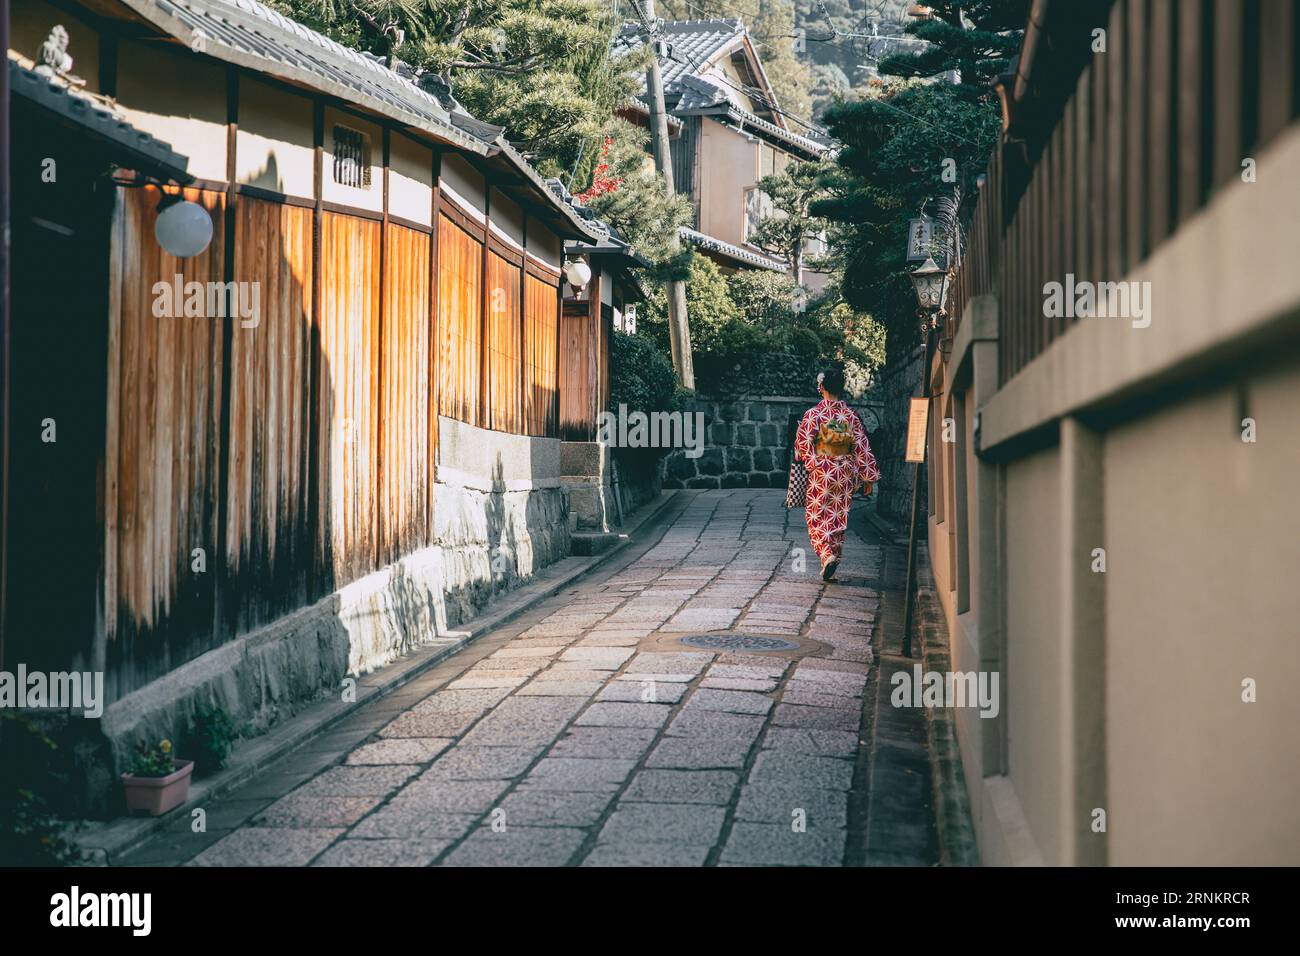 Ruelle calme dans le quartier de Kyoto Gion avec femme kimono japonaise marchant, ancien mode de vie du Japon Banque D'Images